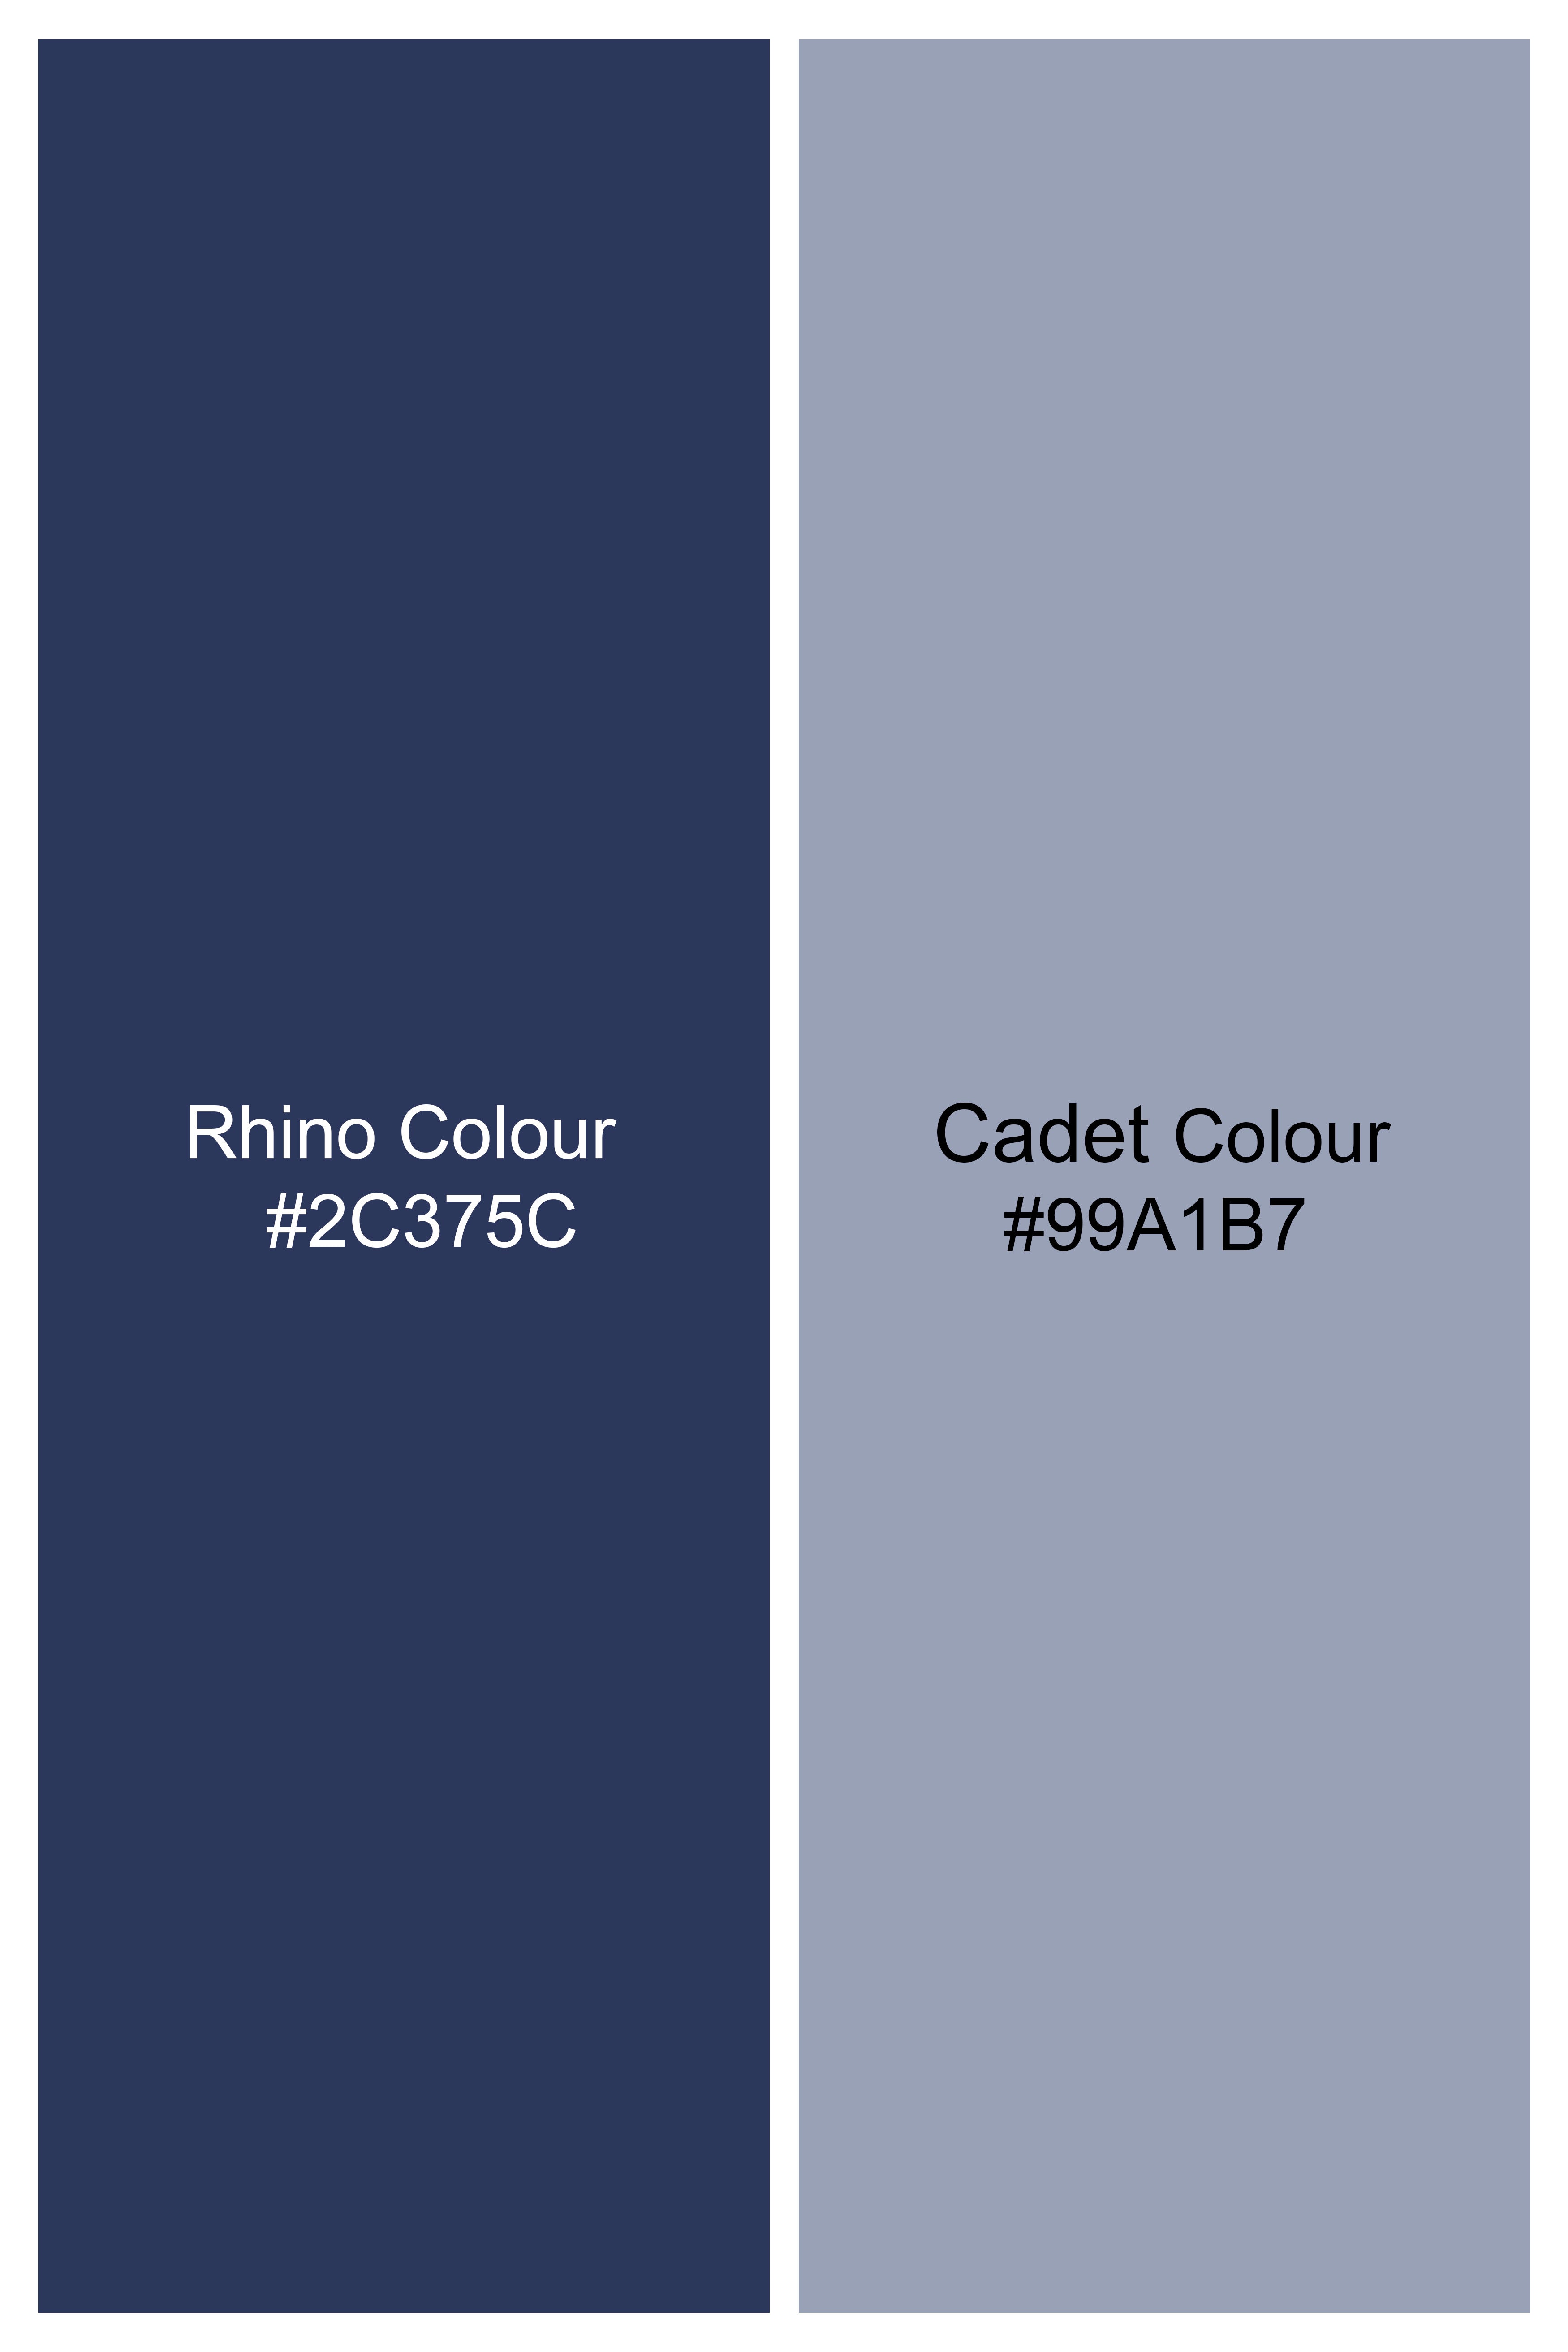 Rhino Blue Windowpane Waistcoat V2942-36, V2942-38, V2942-40, V2942-42, V2942-44, V2942-46, V2942-48, V2942-50, V2942-42, V2942-54, V2942-56, V2942-58, V2942-60